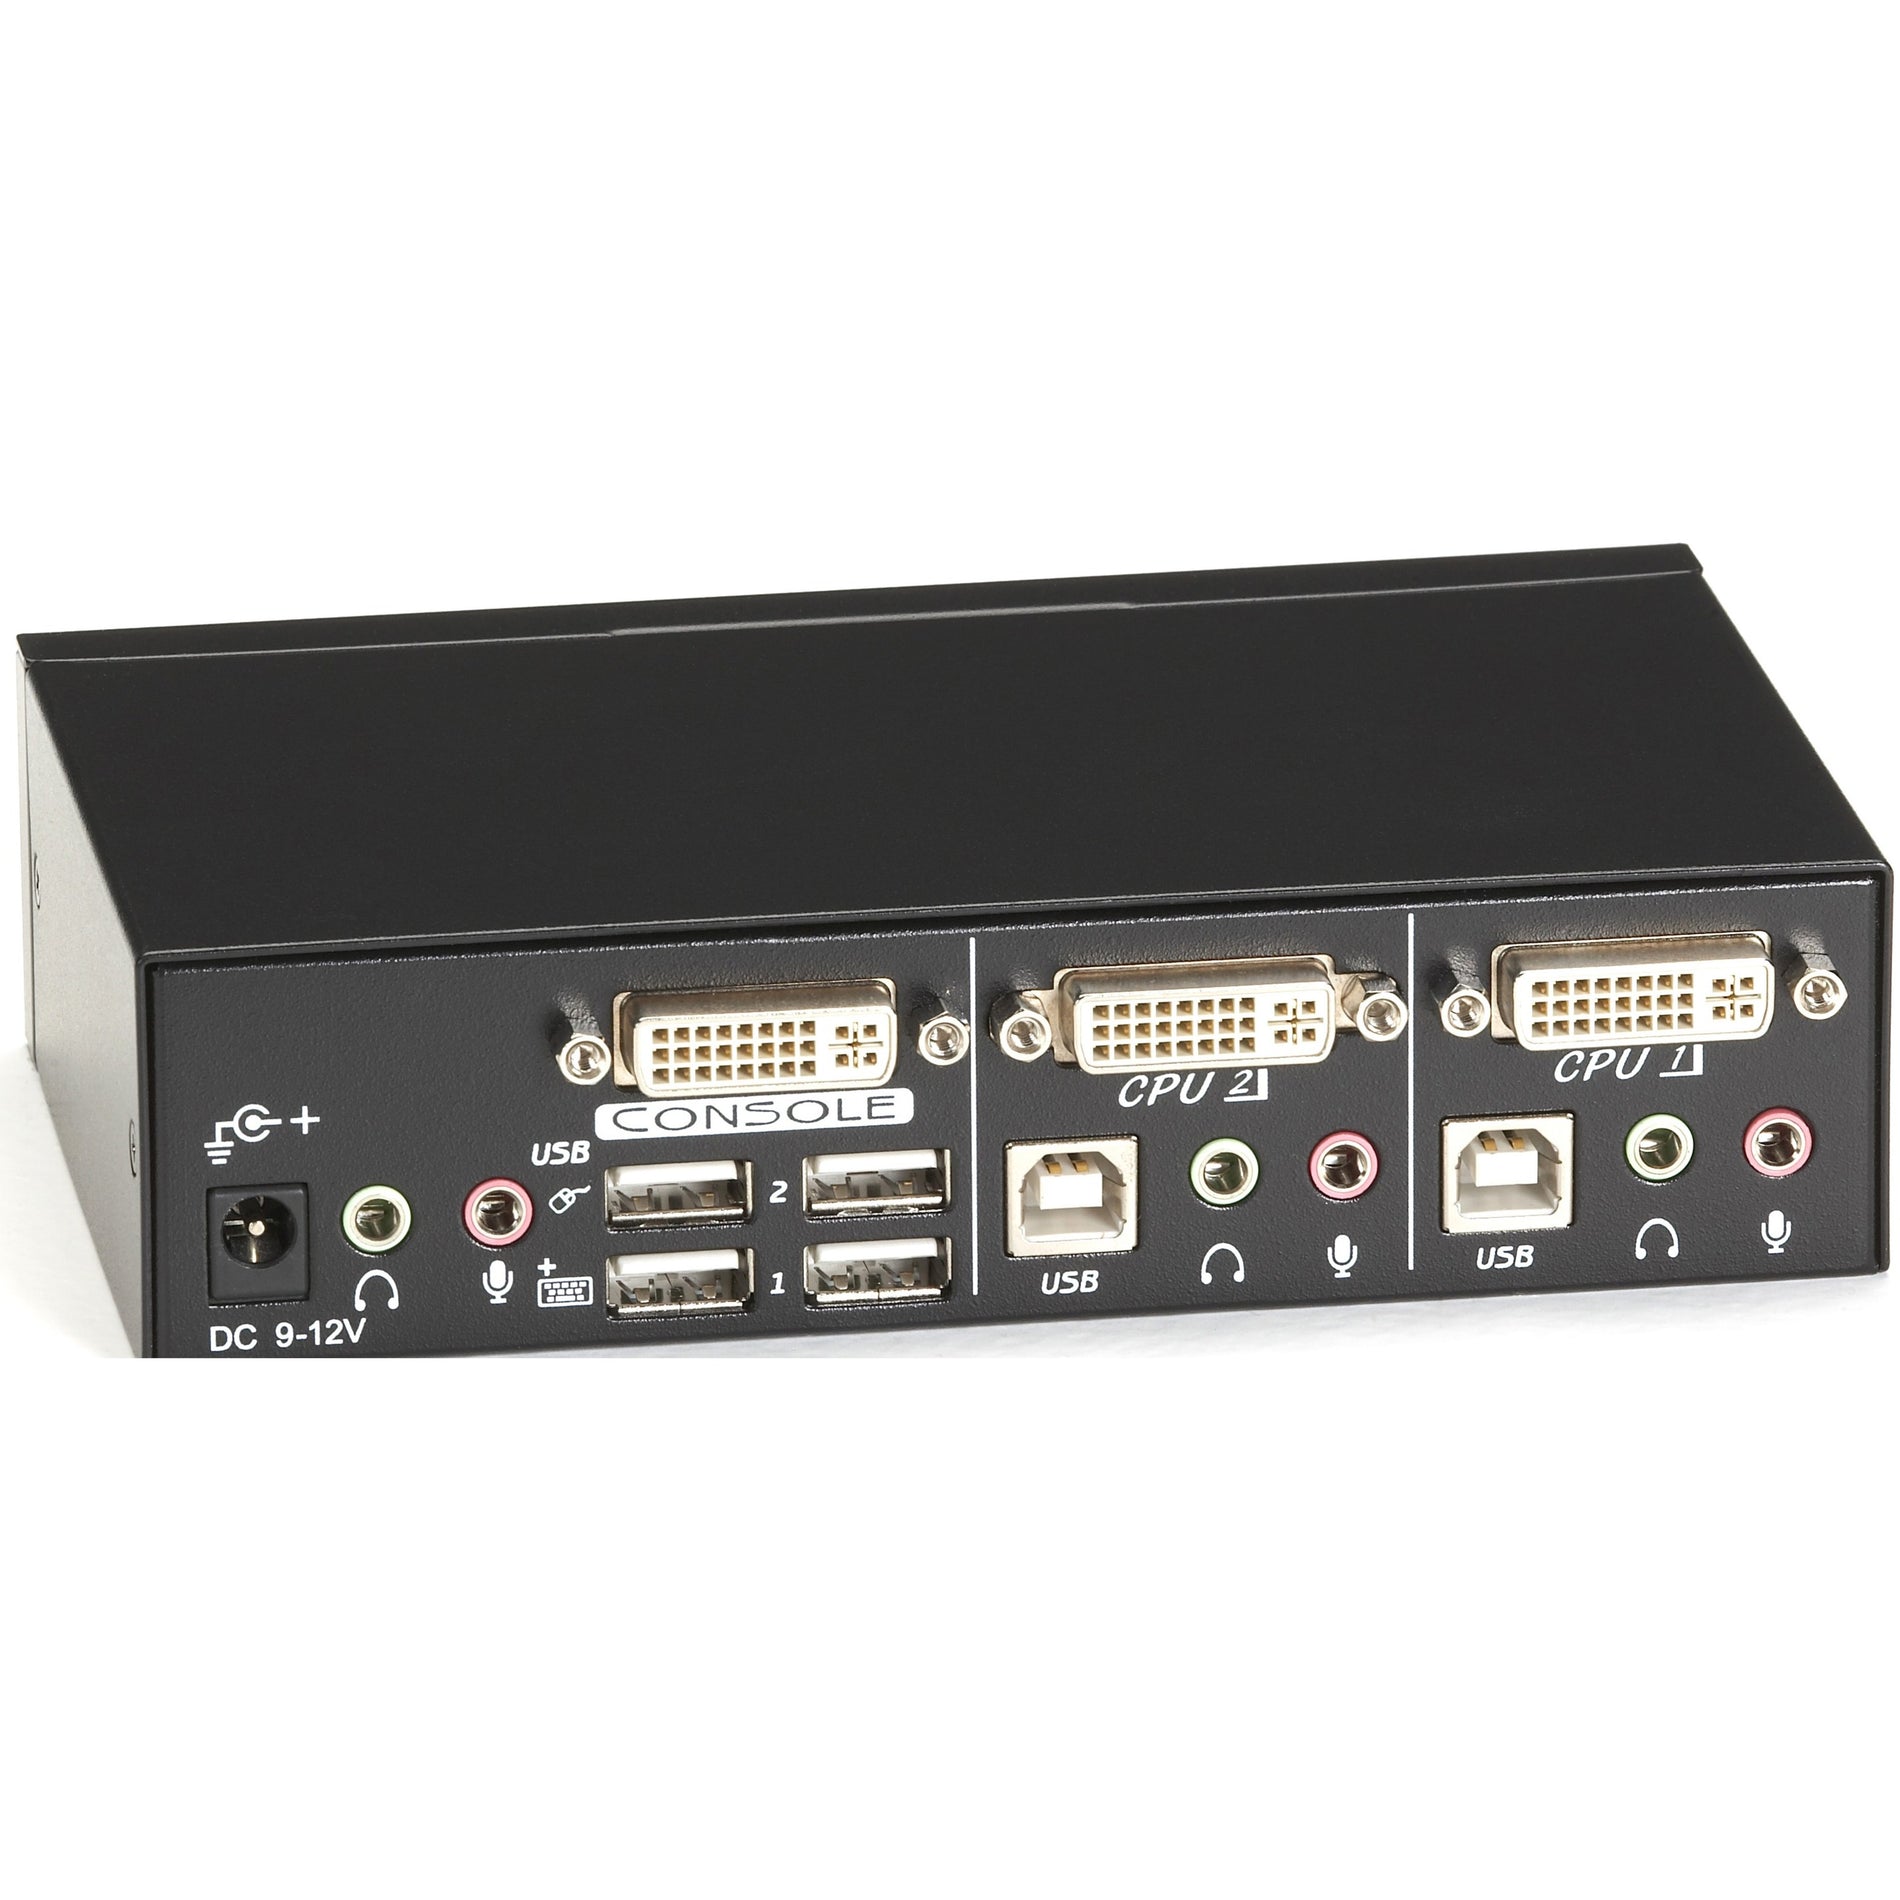 الصندوق الأسود KV9612A ServSwitch DT DVI 2-Port مع محاكاة لوحة المفاتيح/الفأرة USB، WUXGA، 1920 × 1200، ضمان لمدة سنة العلامة التجارية: Black Box اسم العلامة التجارية: صندوق أسود